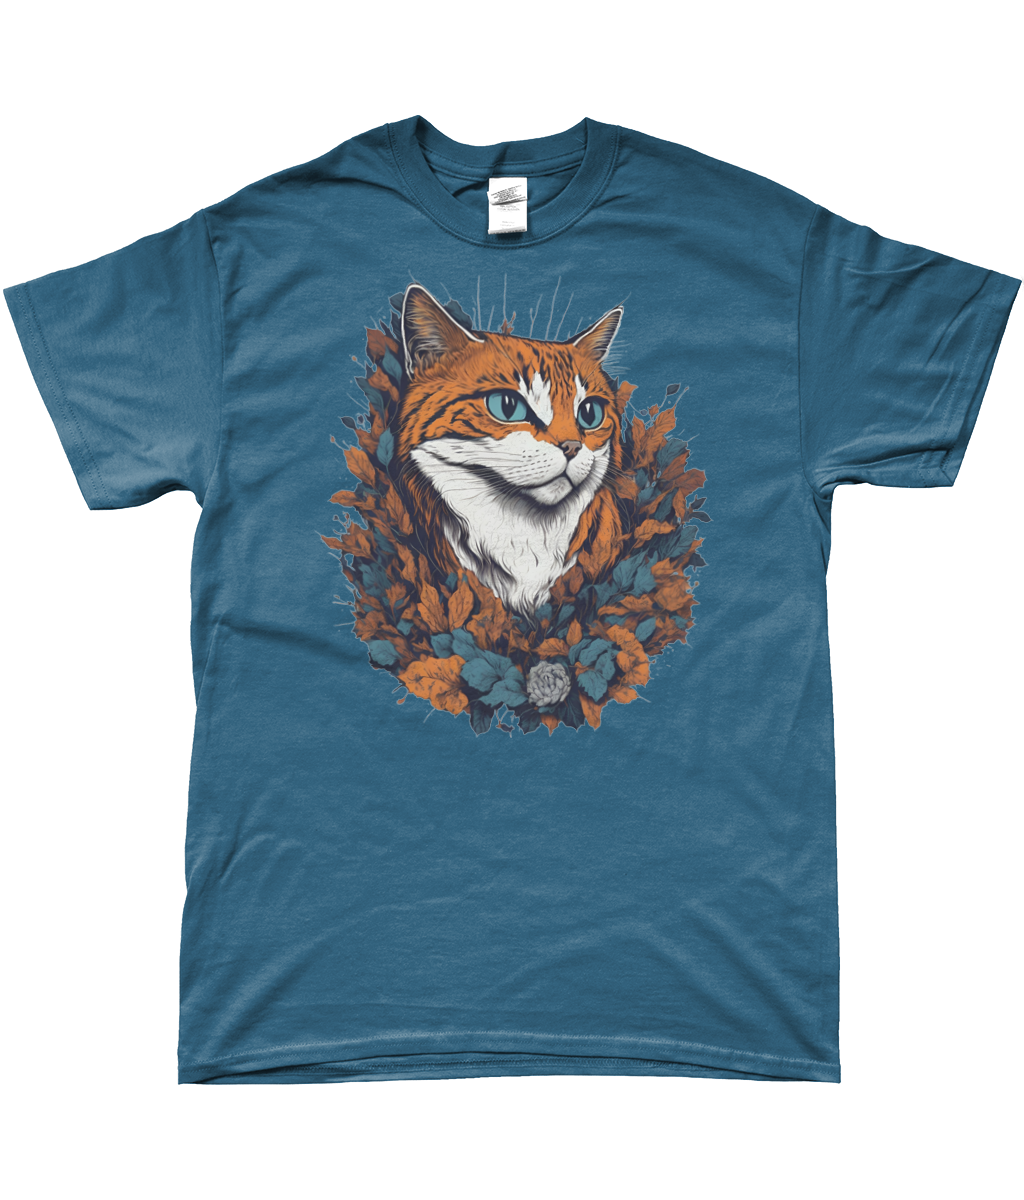 Fans of Catastic "Autumn Orange" Unisex Ringspun T-Shirt